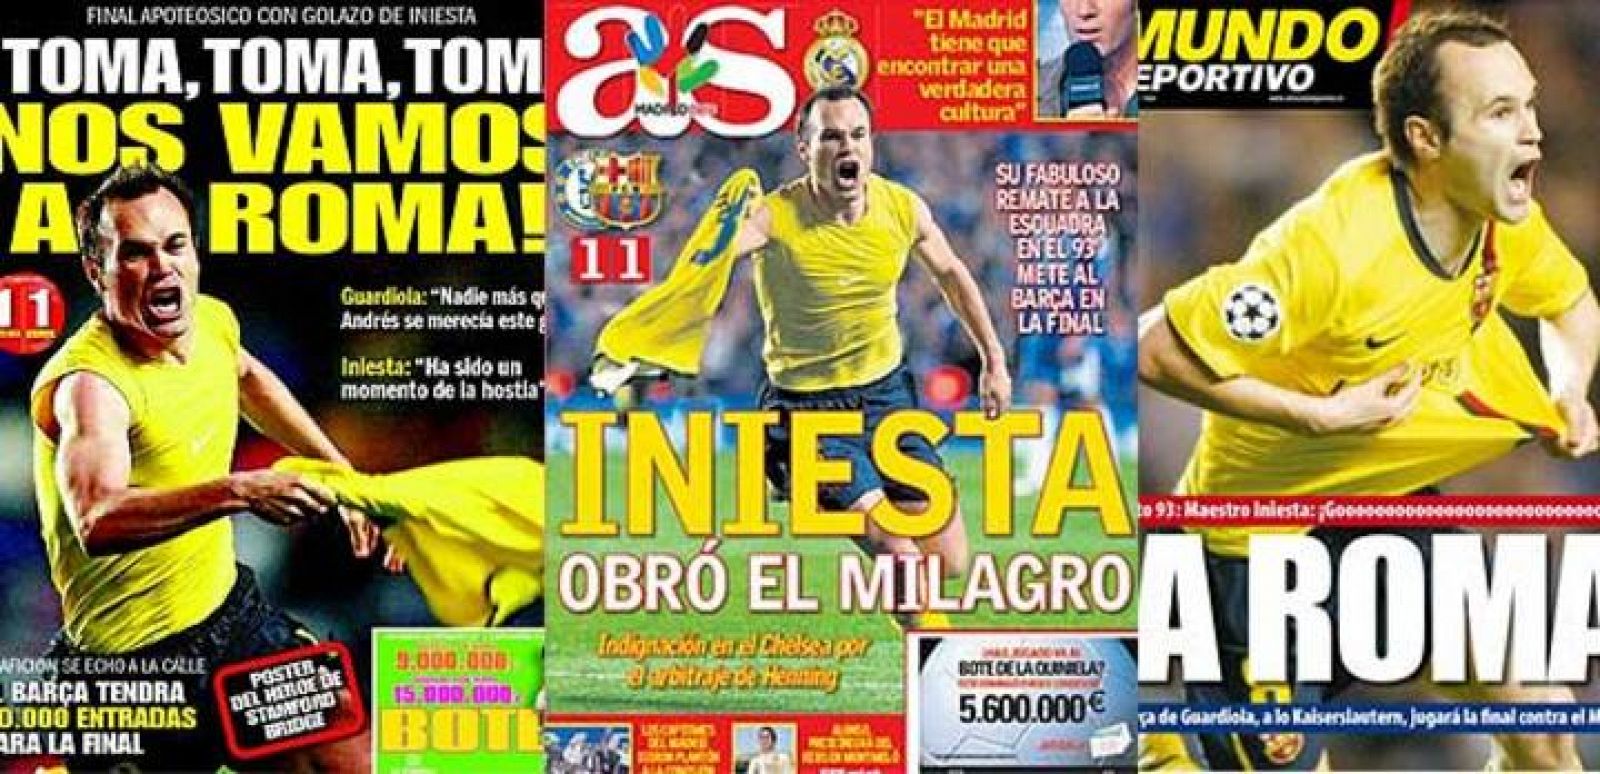 La prensa española destaca en sus portadas la victoria del FC Barcelona.